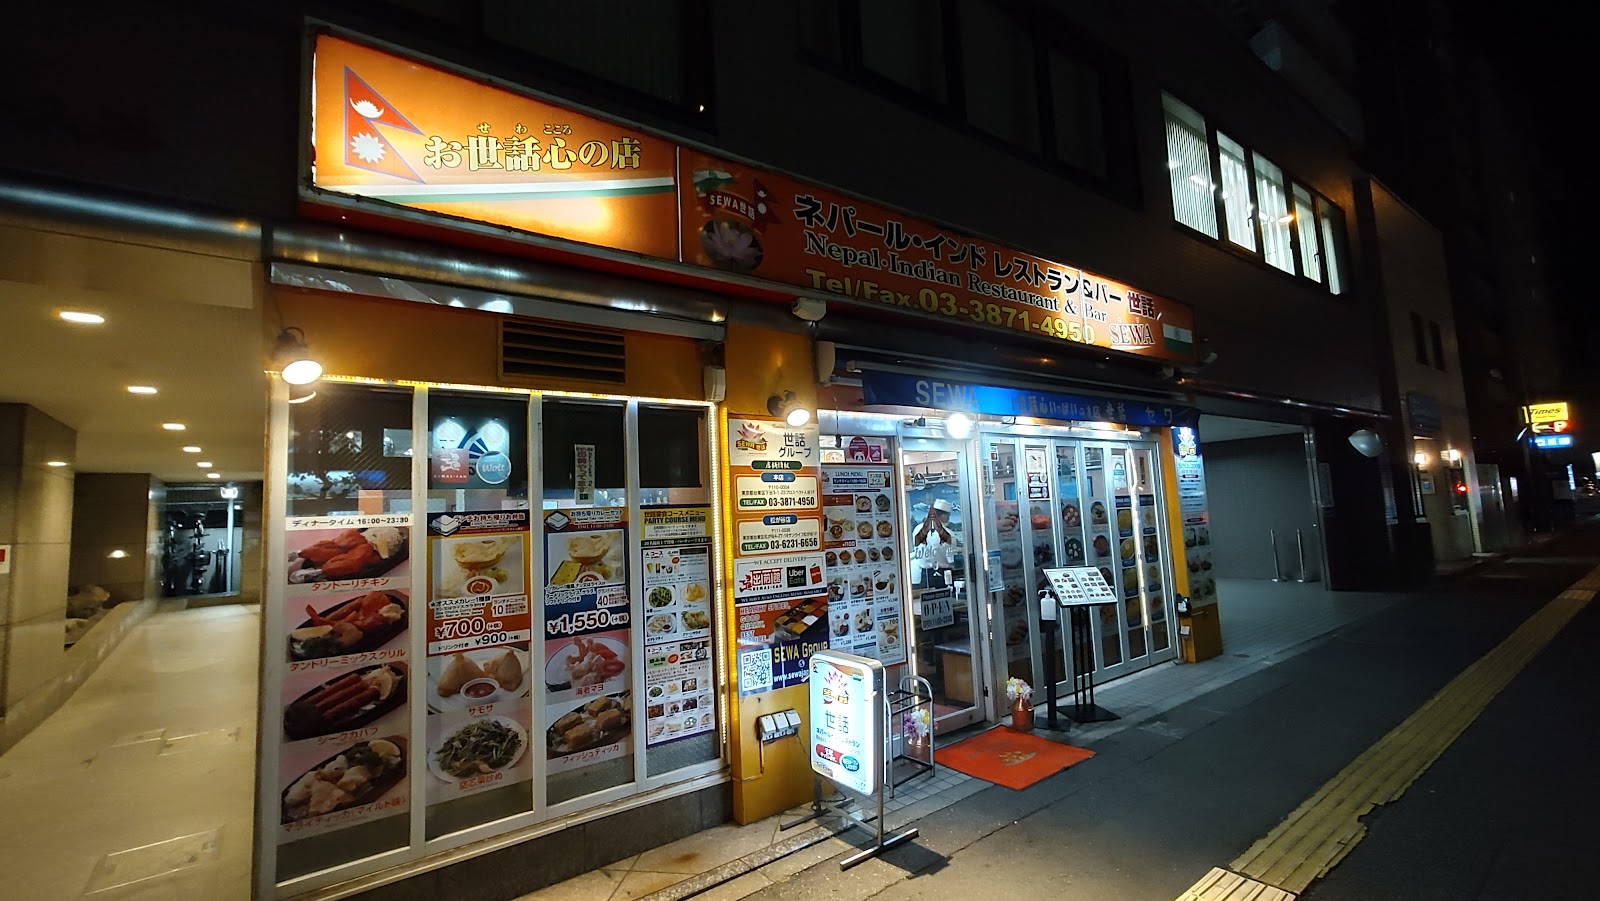 世話ネパール・インドレストラン SEWA下谷本 店の写真